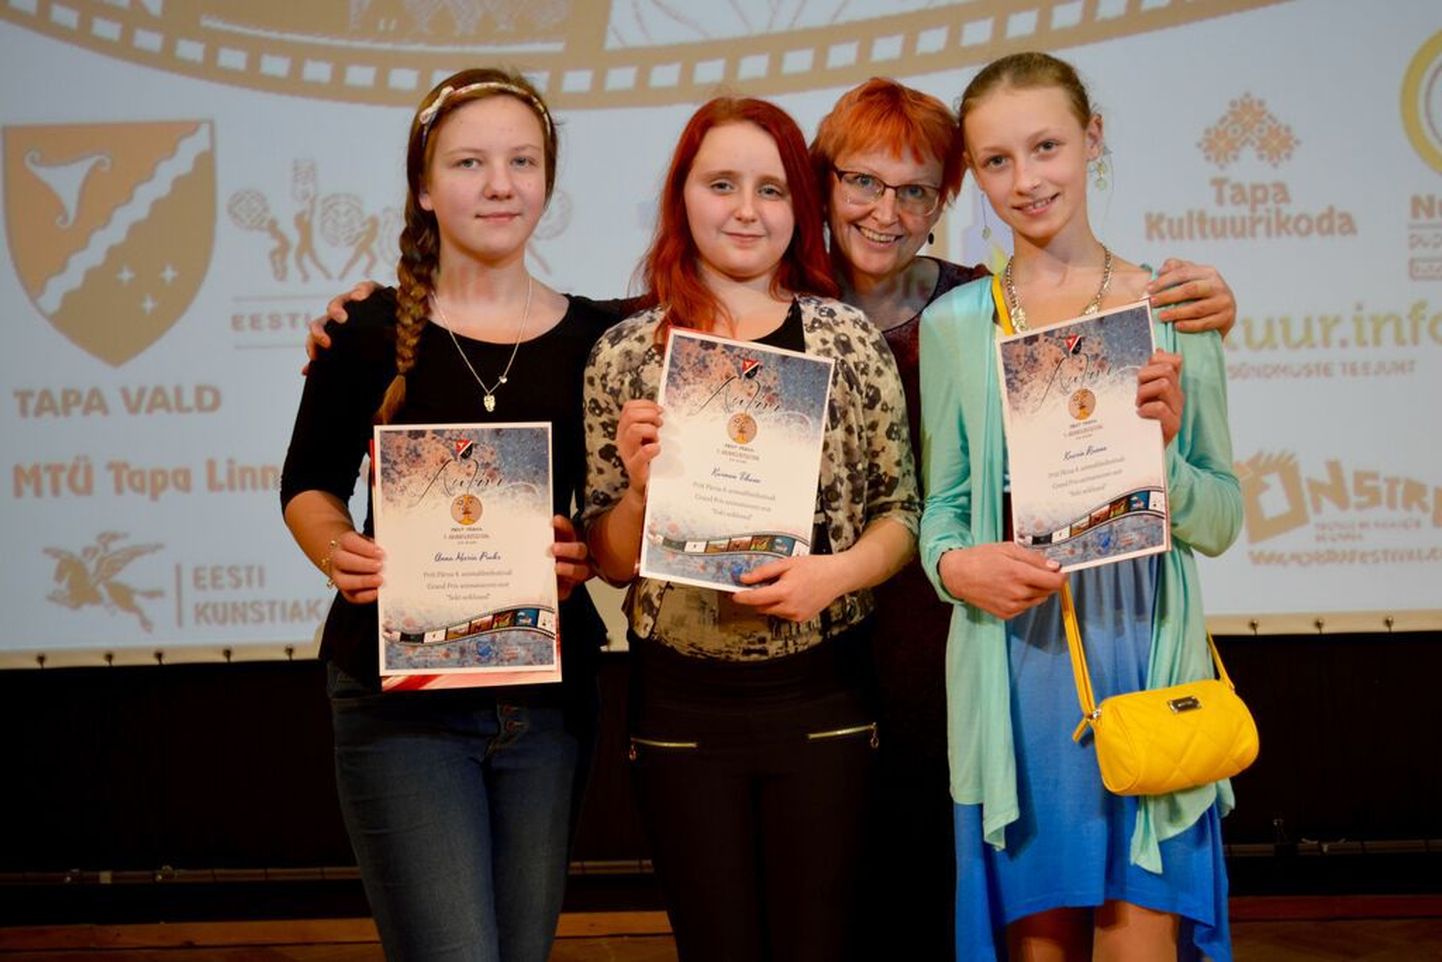 Albu põhikooli õpilased (vasakult) Anna Maria Praks, Karmen Tihane, Albu põhikooli kunstiõpetaja Kersti Liivak  ja Kaarin Rannu. Pildilt on puudu Grete Roos.